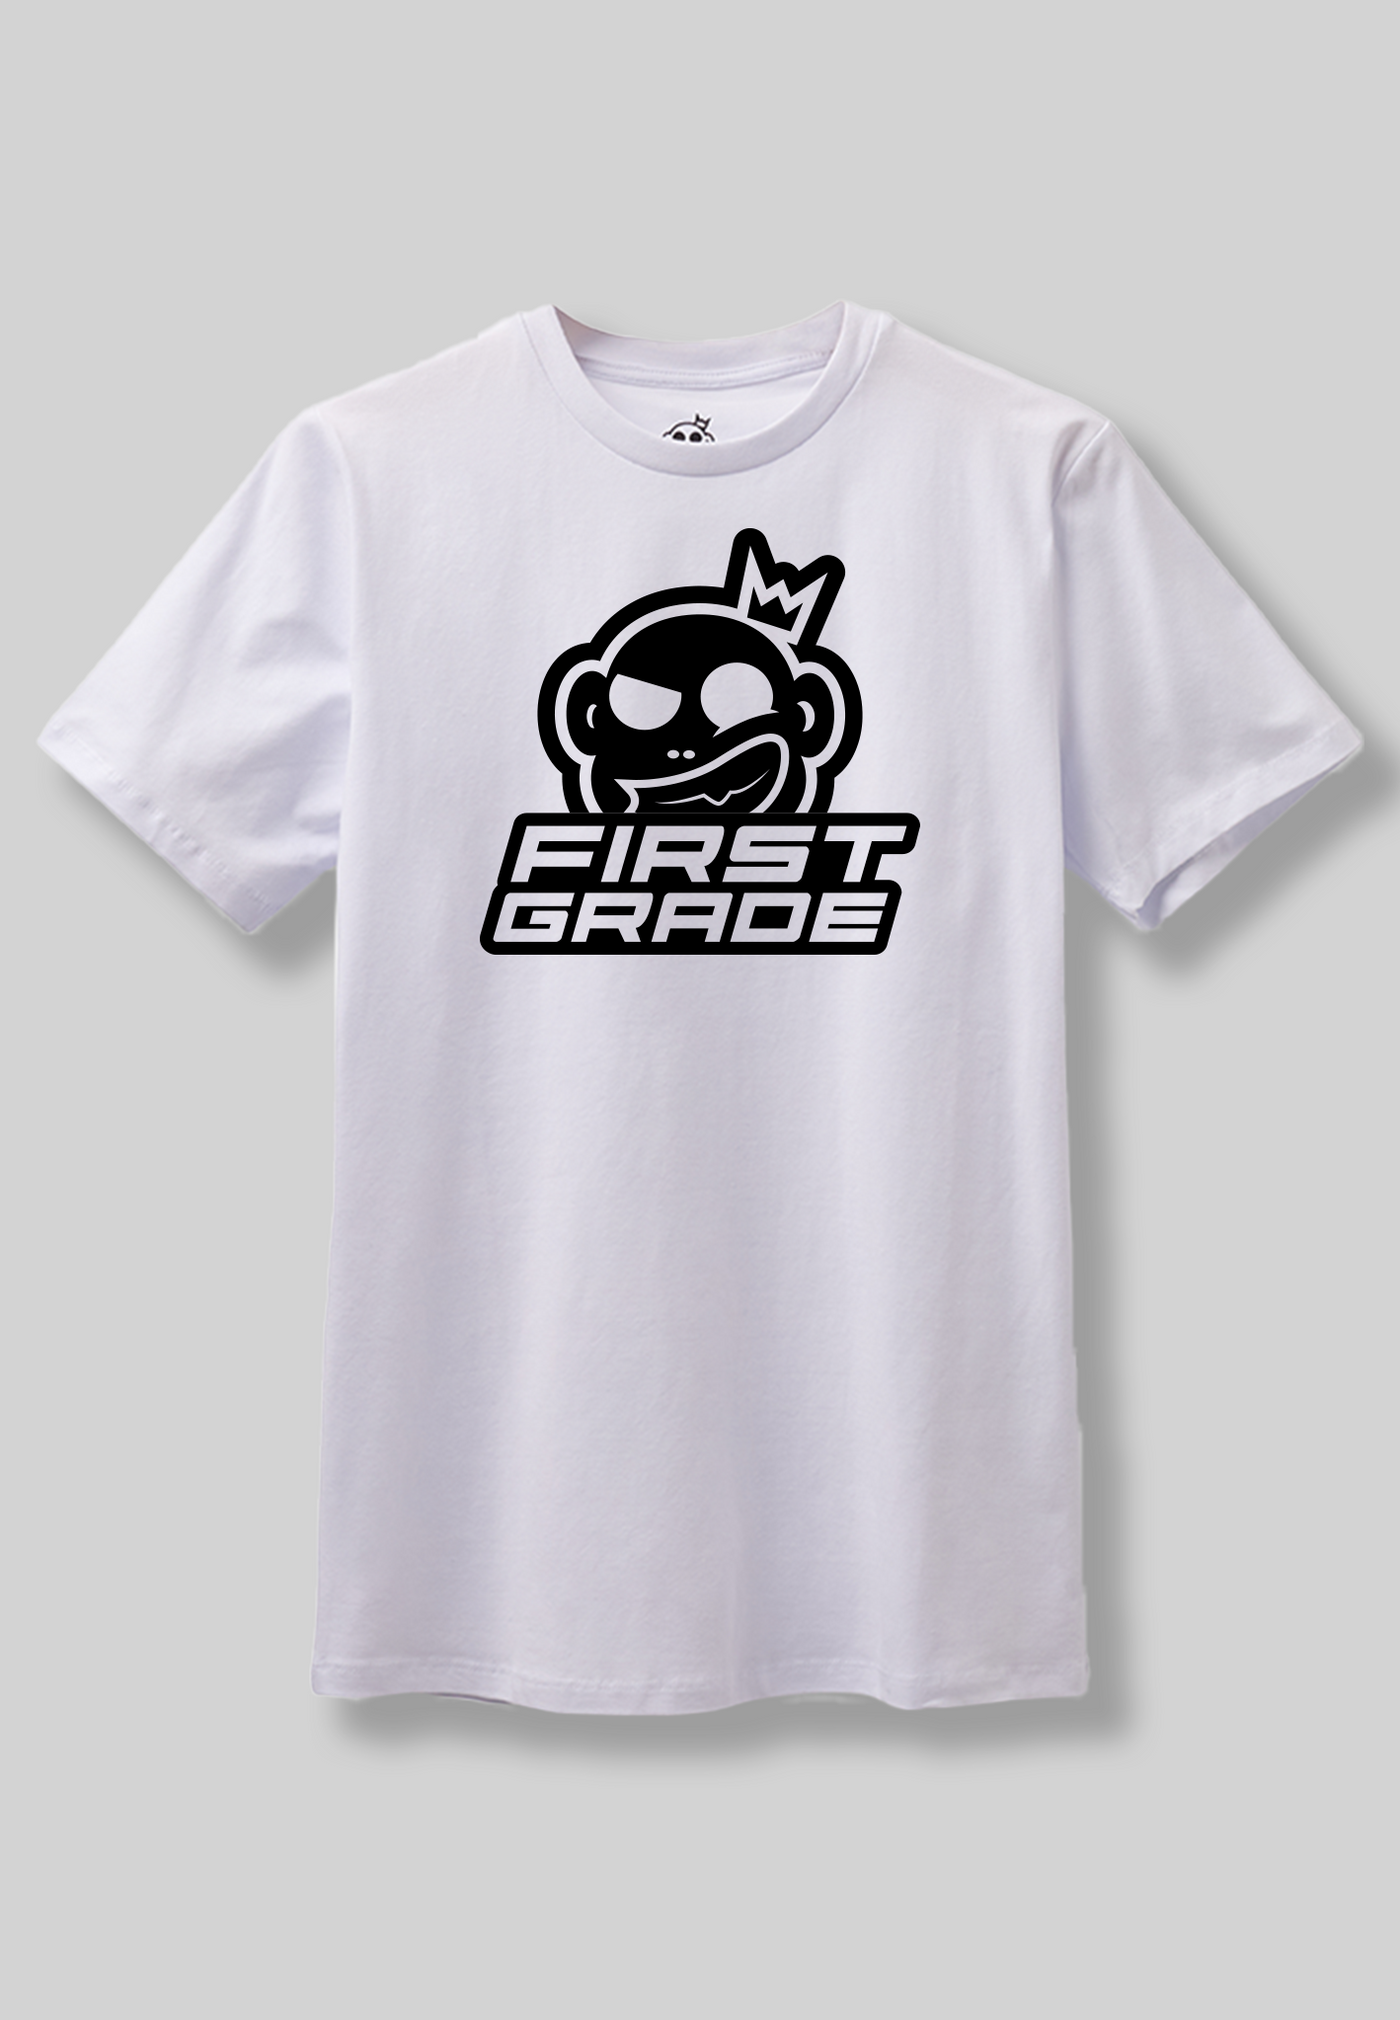 FirstGrade - CLUB - White t-shirt